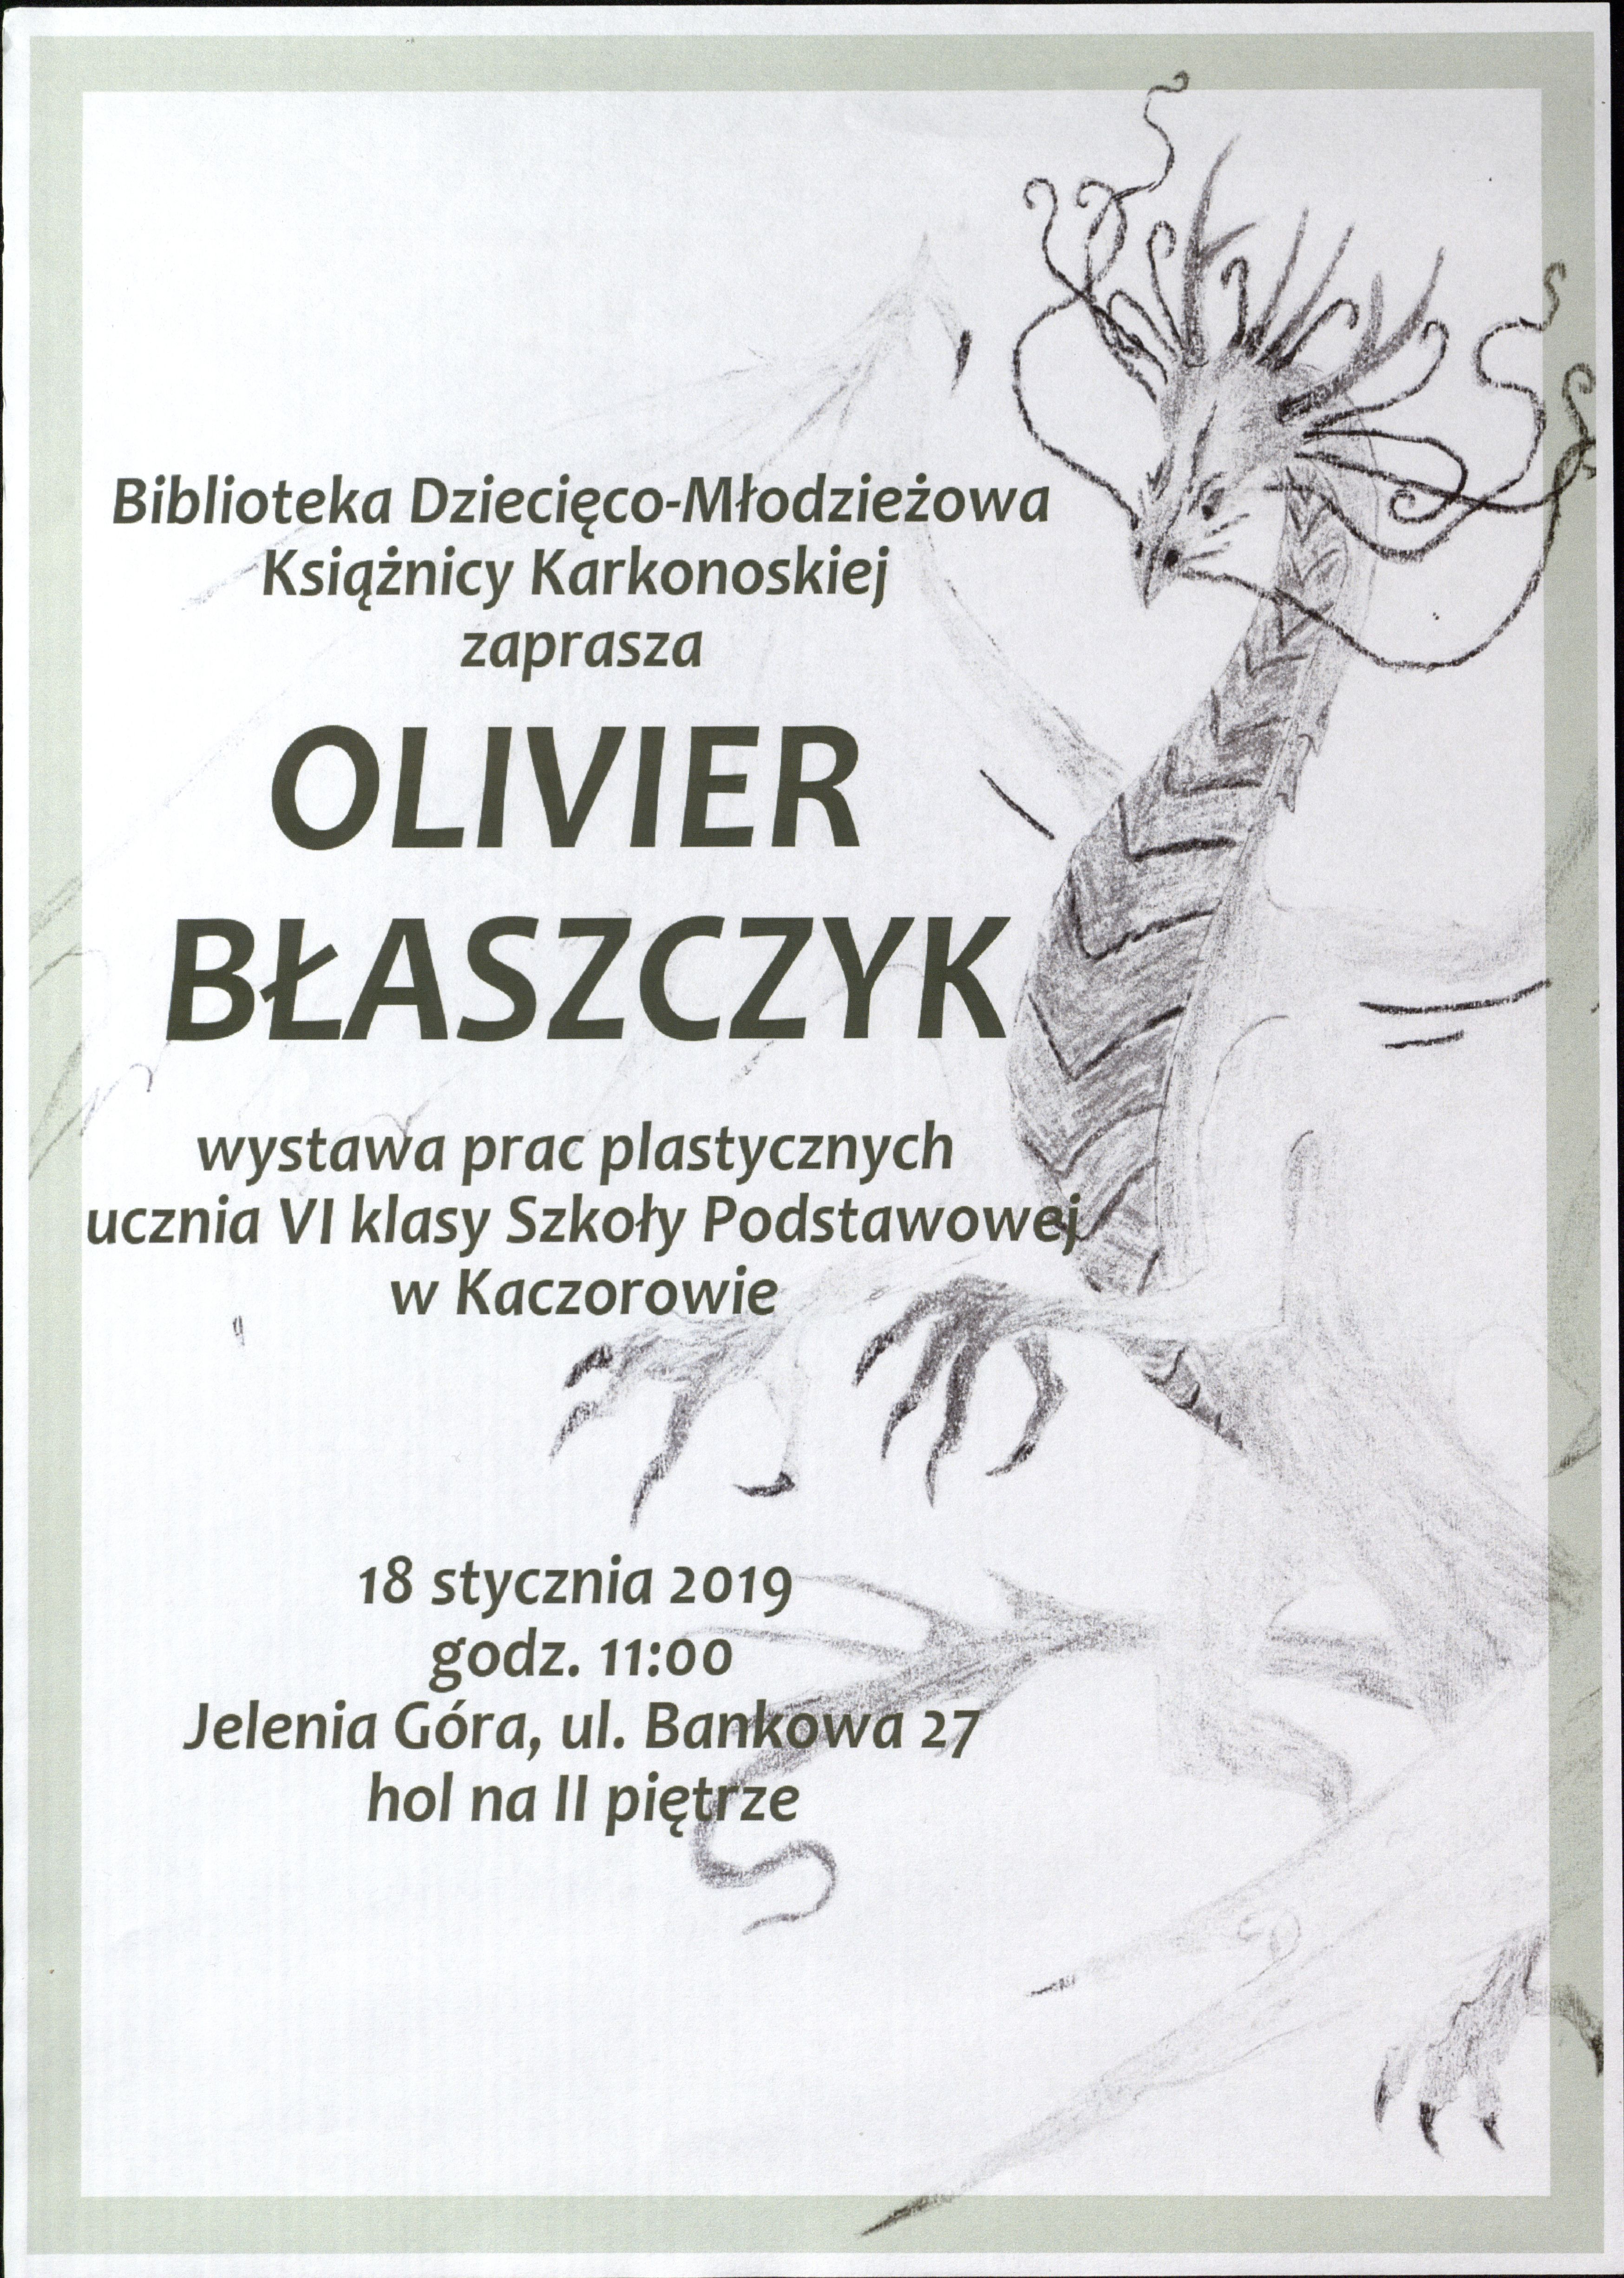 Wystawa prac plastycznych Oliviera Błaszczyka